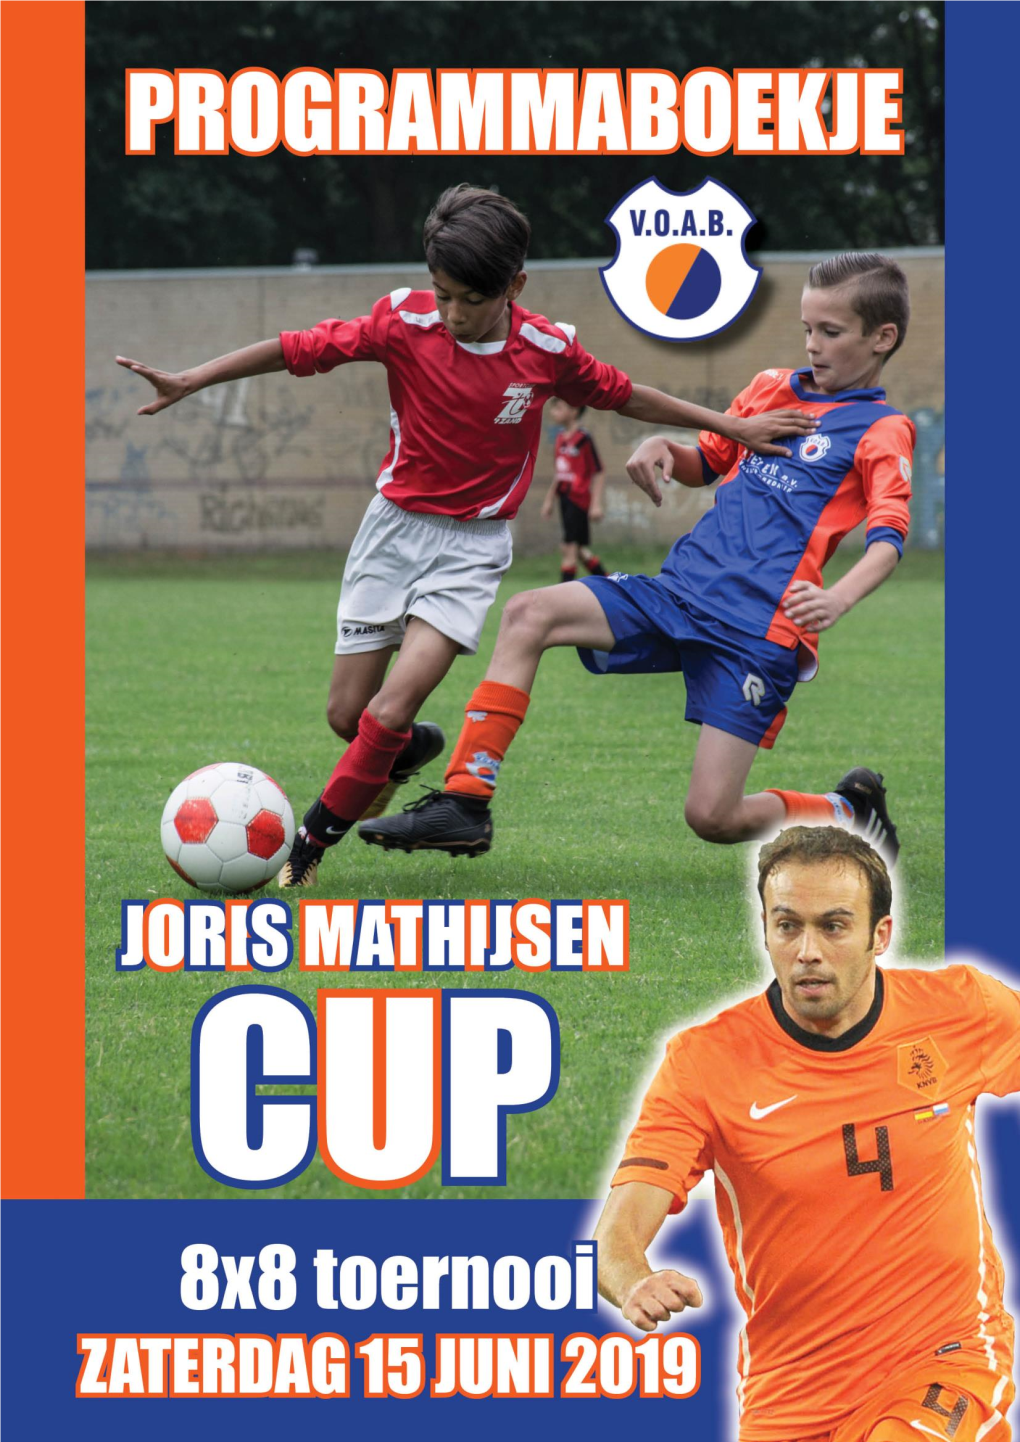 Joris Mathijsen Cup 2019